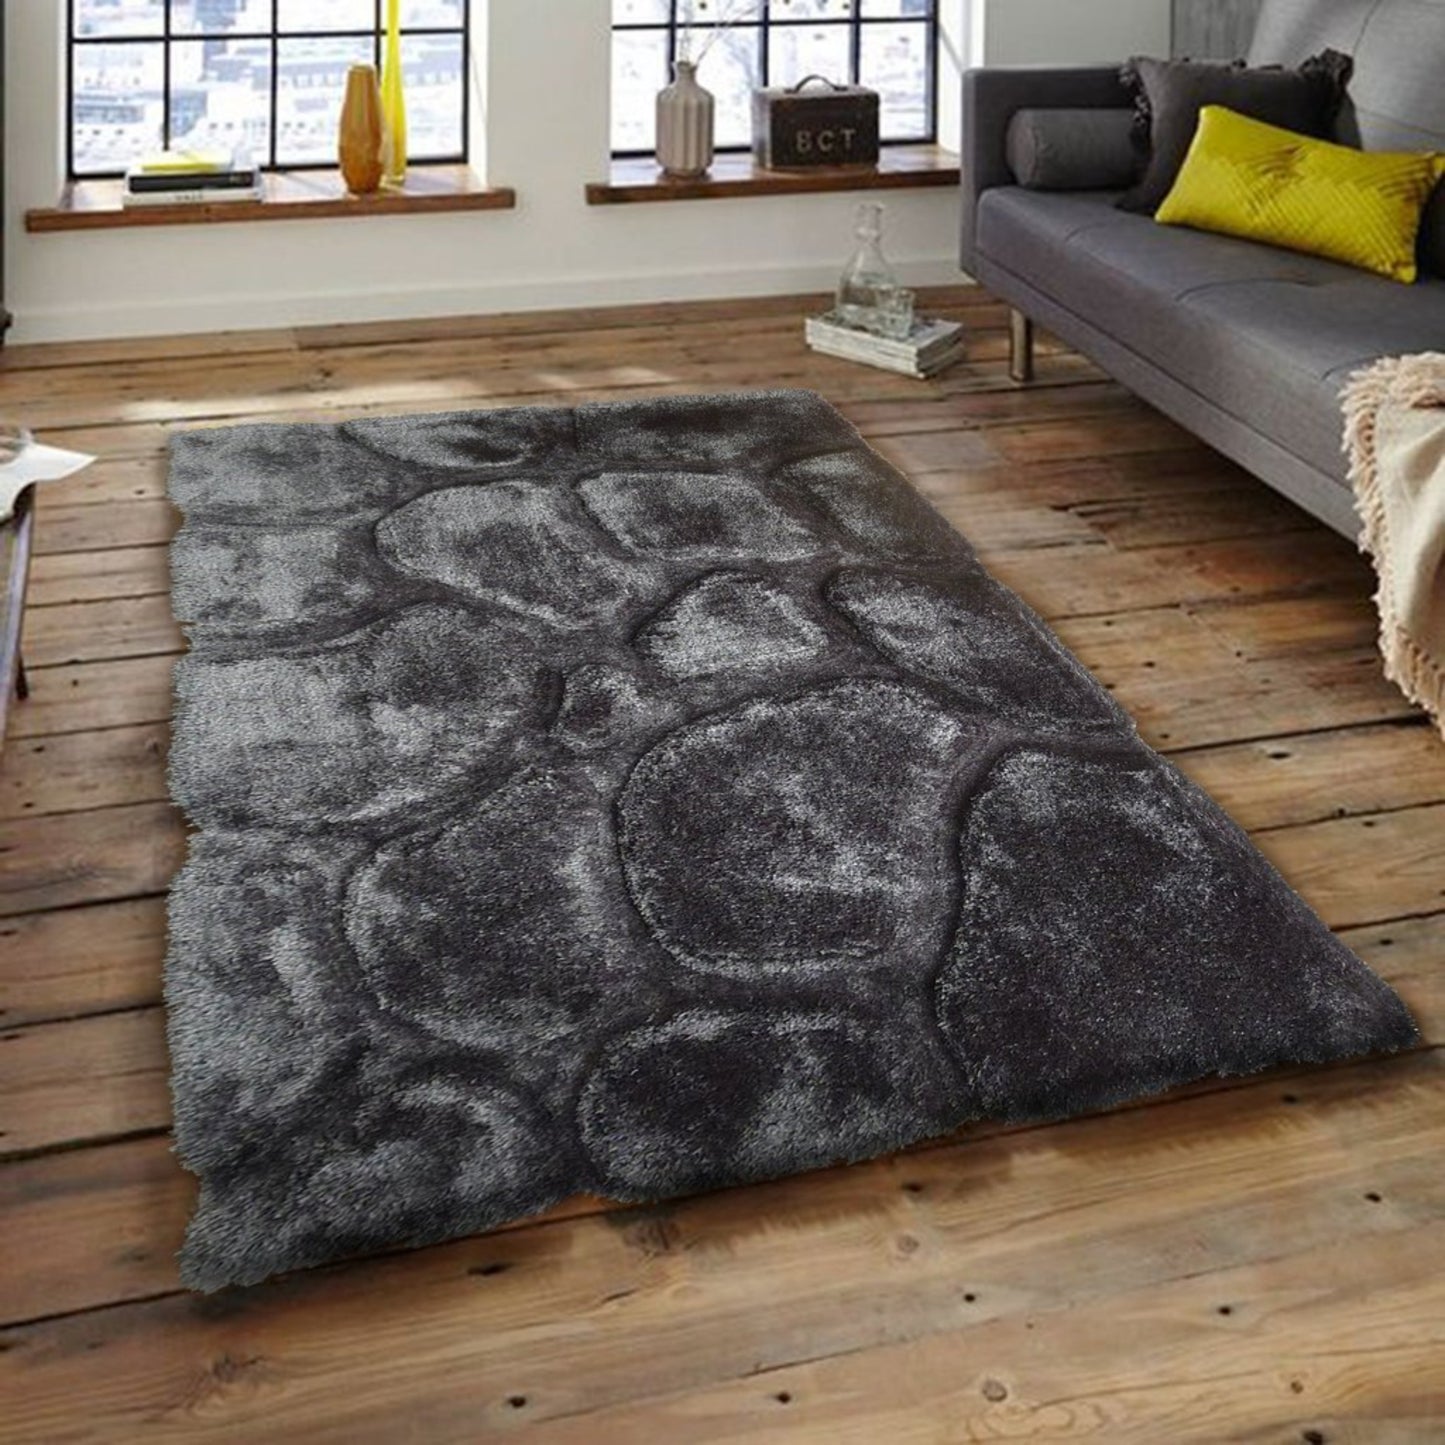 Soft Cozy Rock 3D Design Shag Area Rug/Carpet Gray